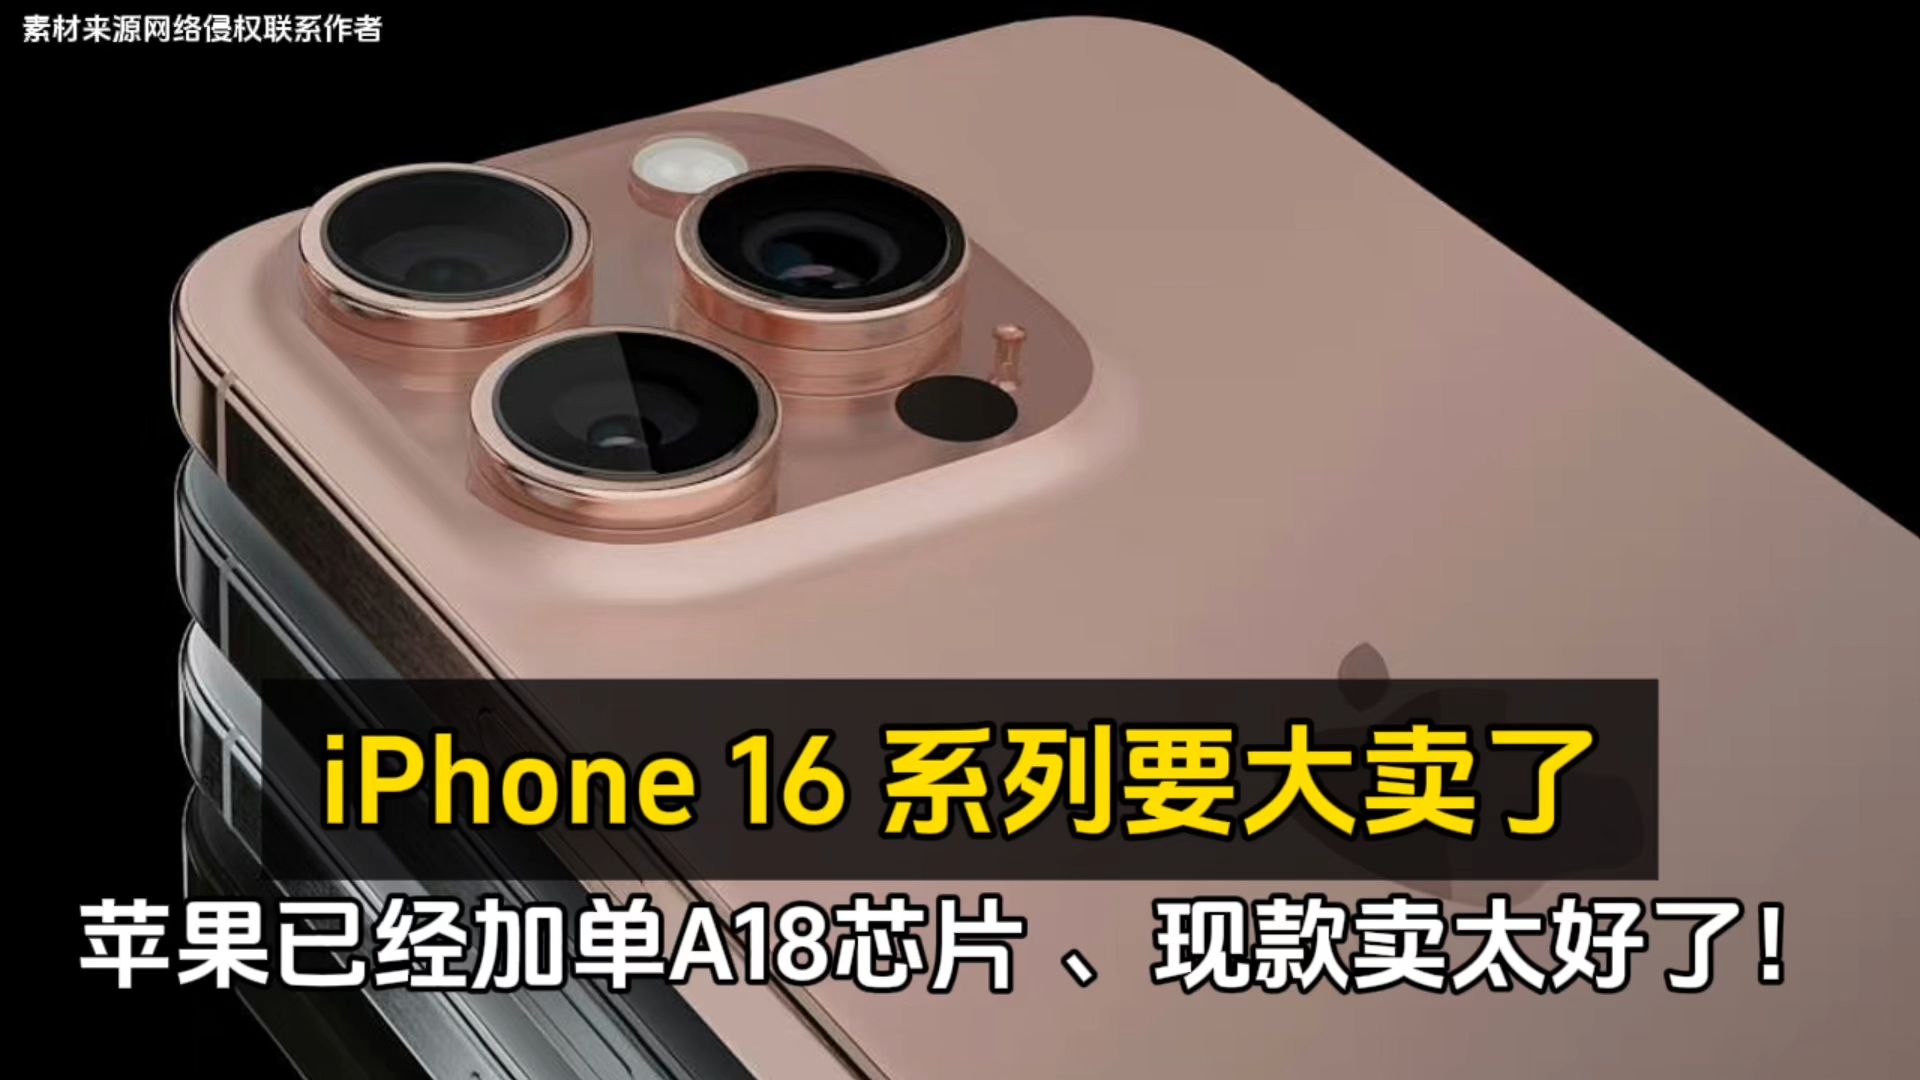 iPhone 16 系列要大卖了：苹果已经加单 A18 芯片 、现款卖太好！